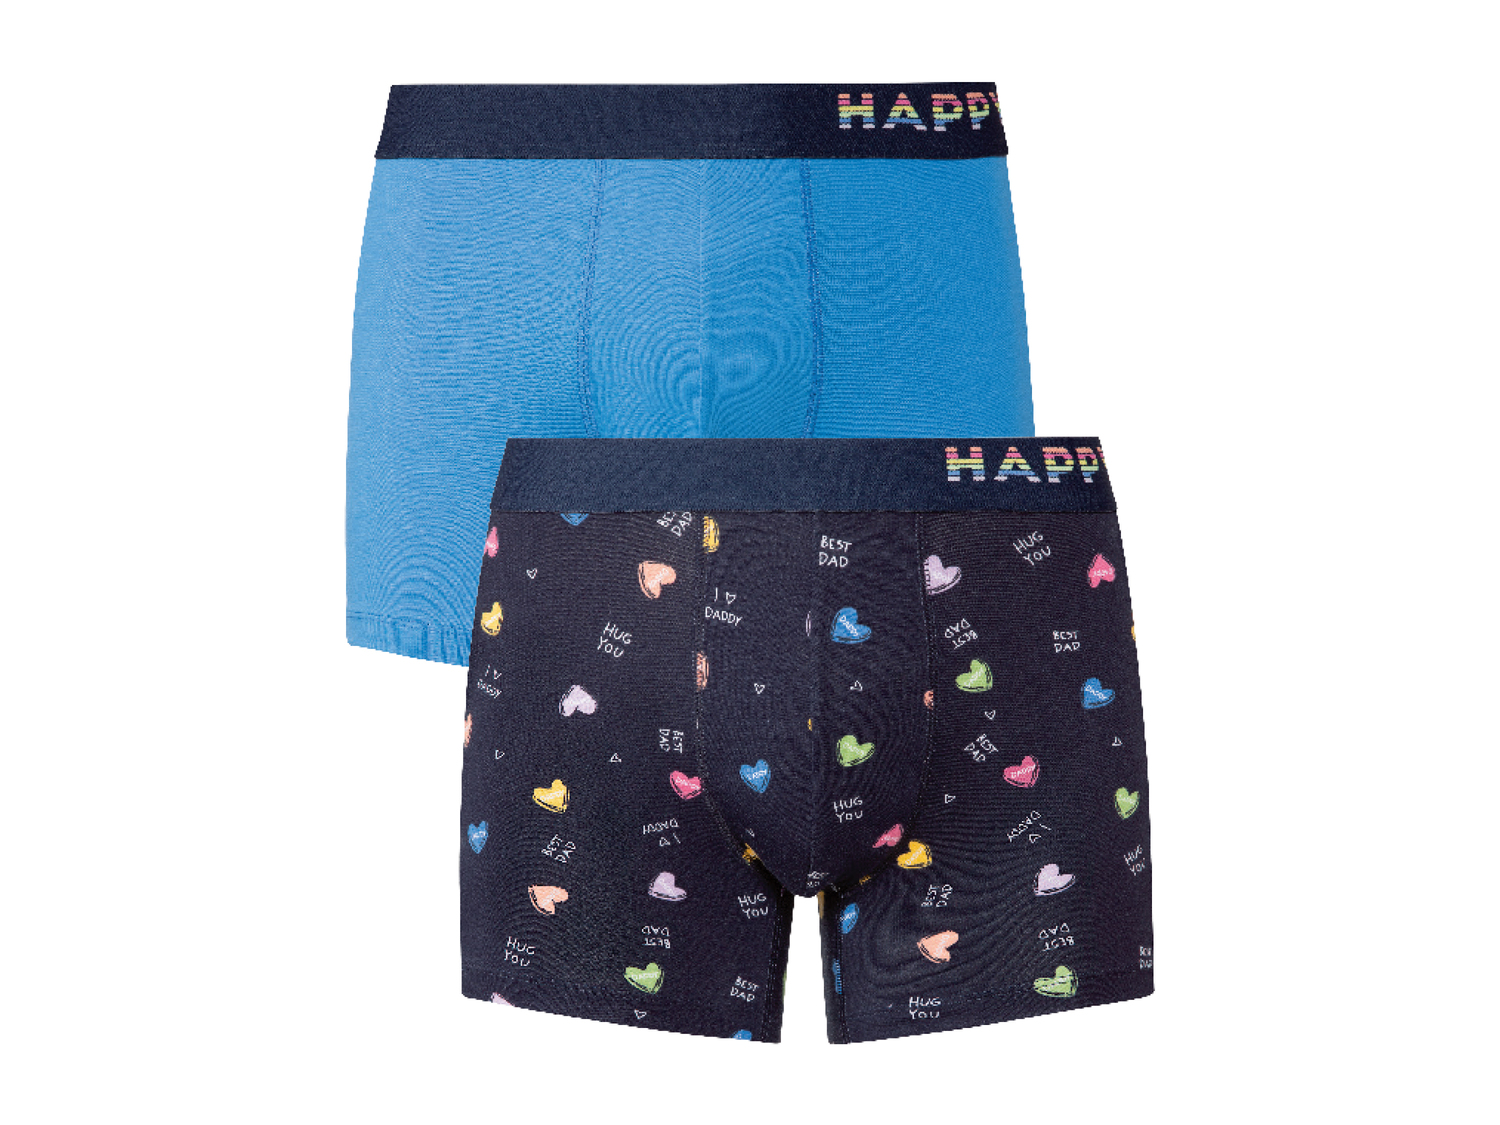 Boxer da uomo Happy-shorts, prezzo 8.99 &#8364; 
2 pezzi - Misure: M-XL
Taglie ...